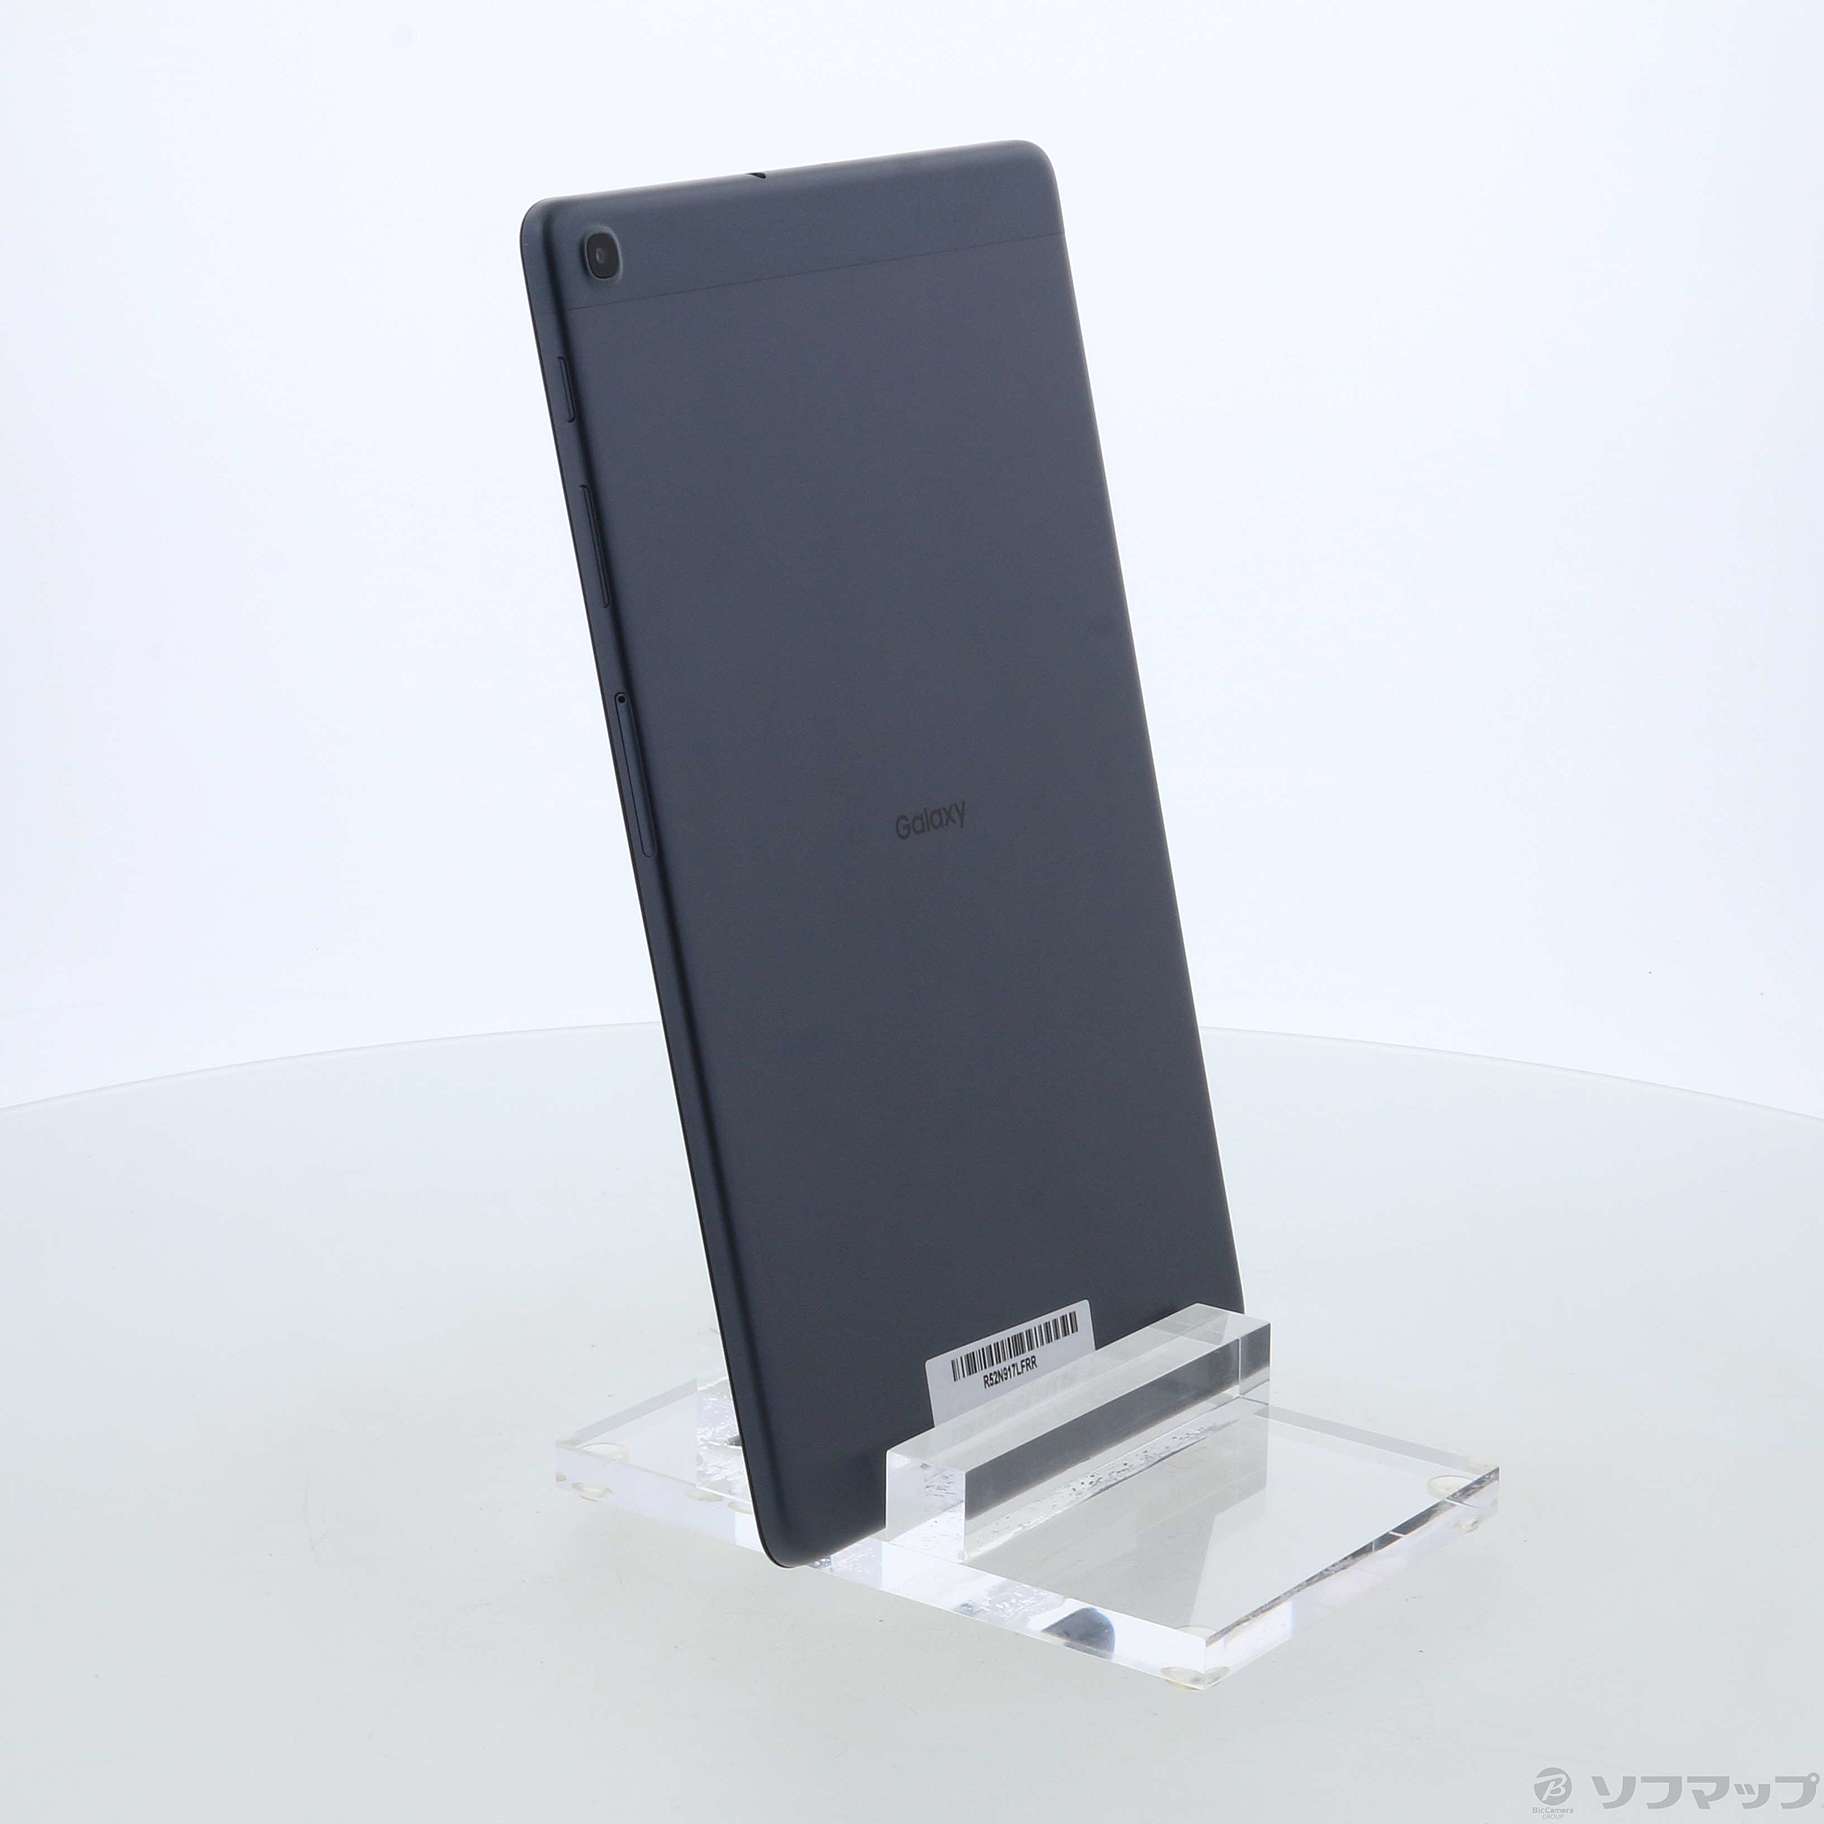 Galaxy Tab A 32GB ブラック SM-T510 Wi-Fi